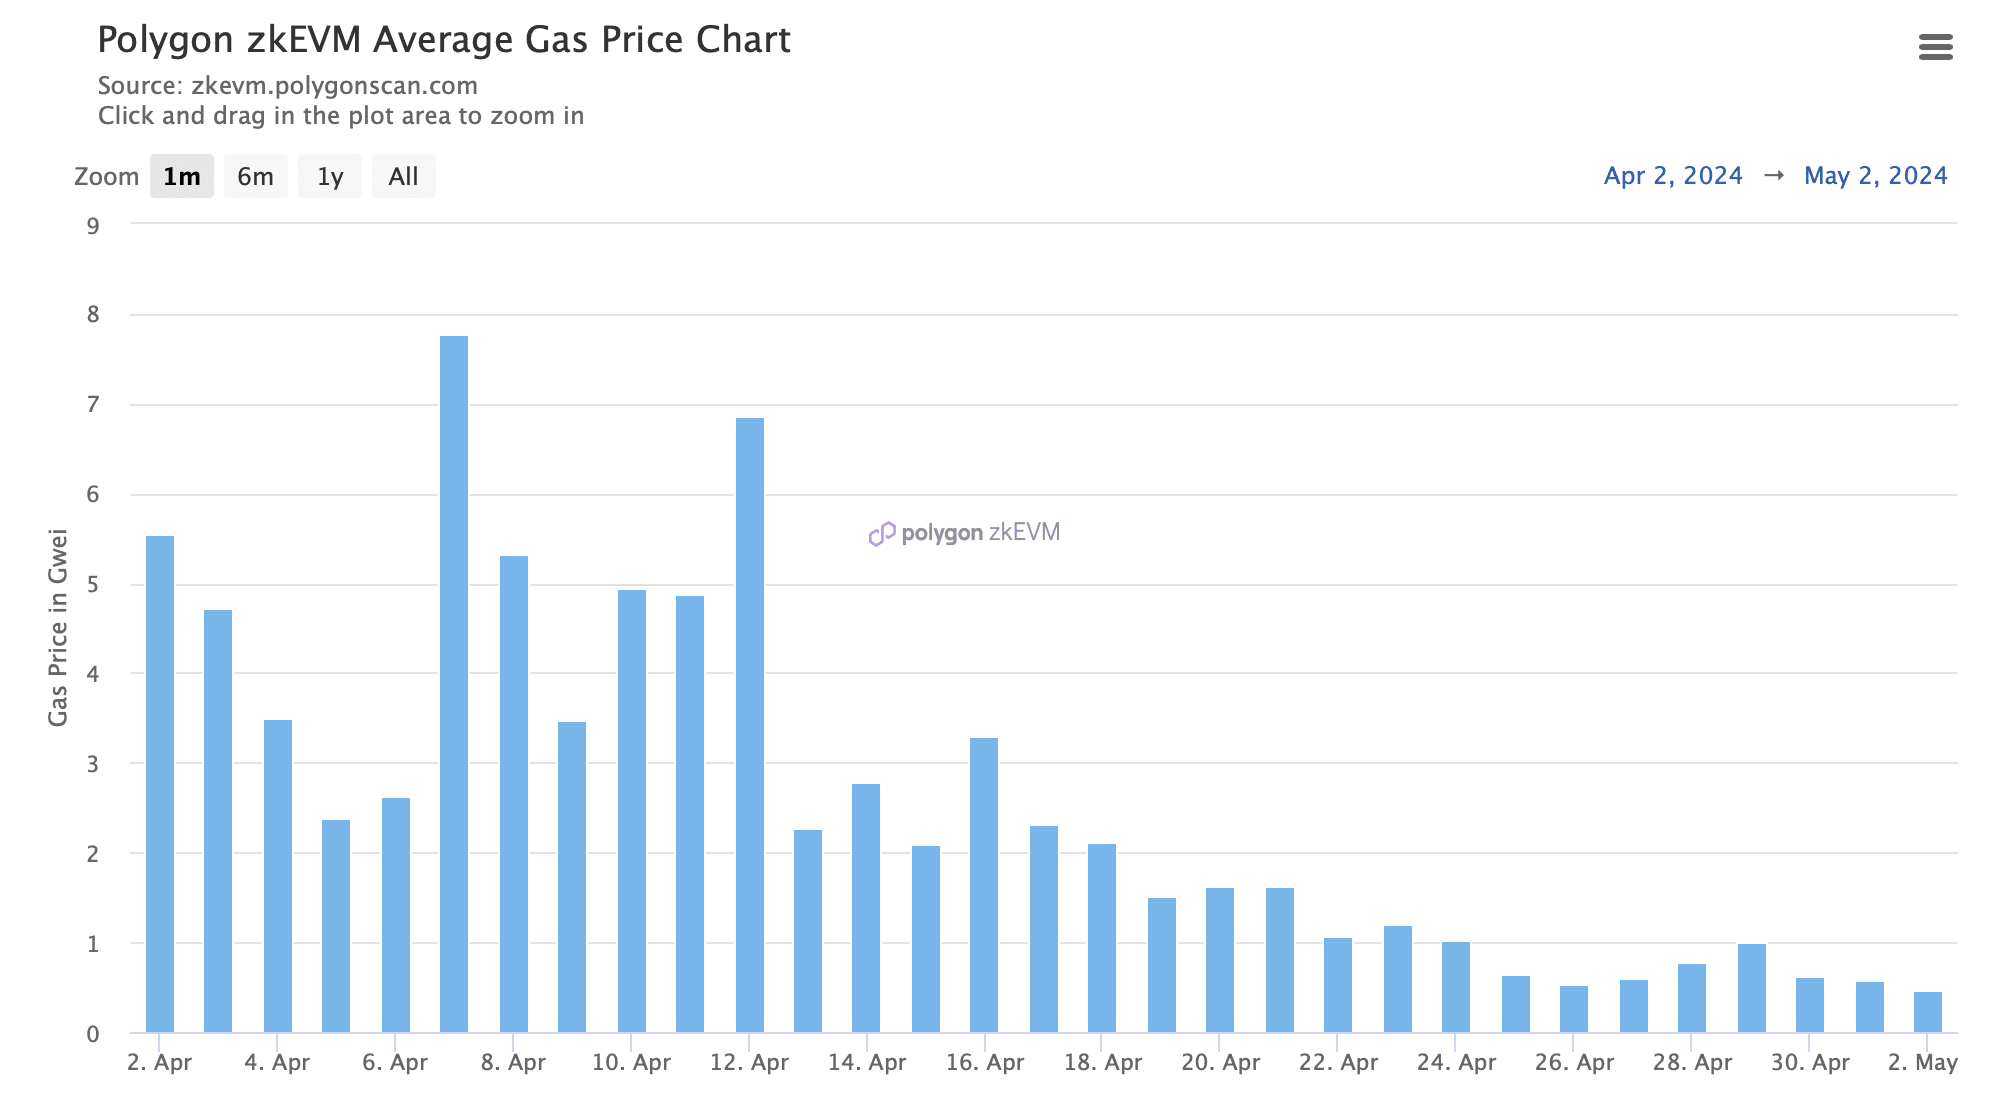 Il prezzo del gas in zkEVM è sceso